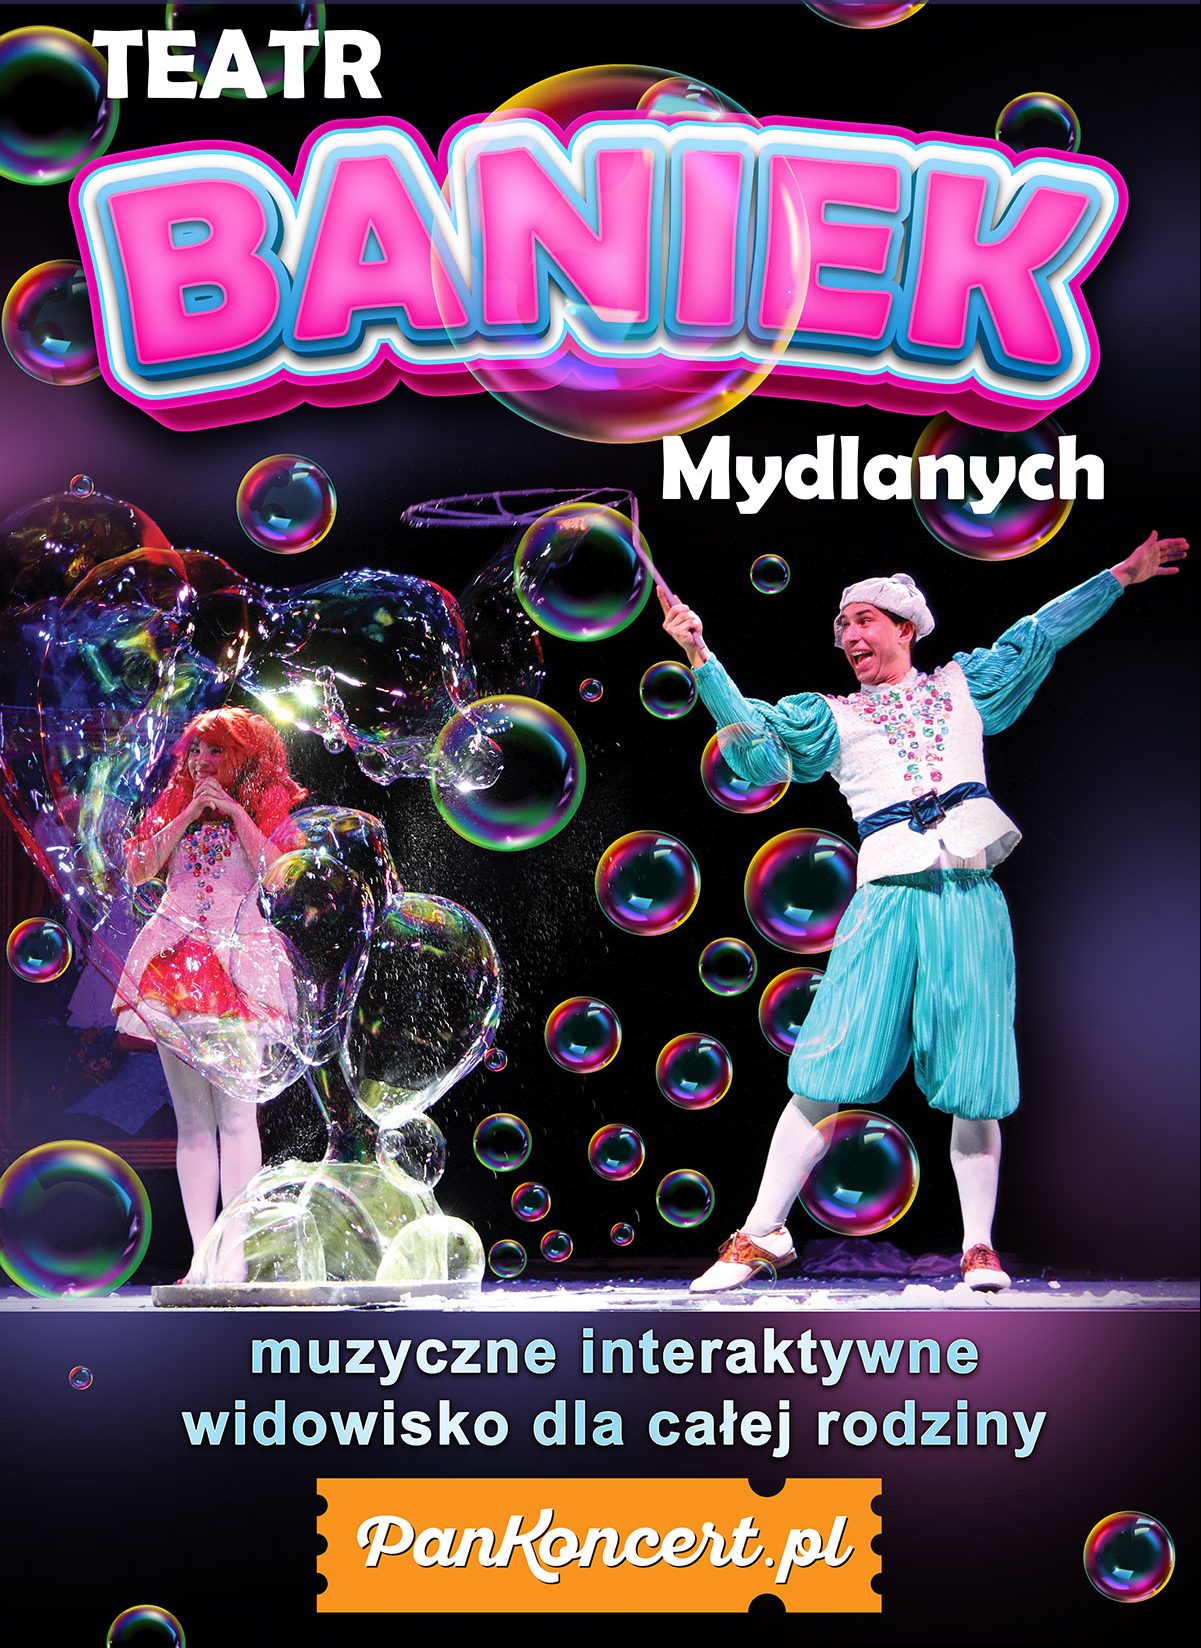 Teatr Baniek Mydlanych w Gdańsku i w Gdyni